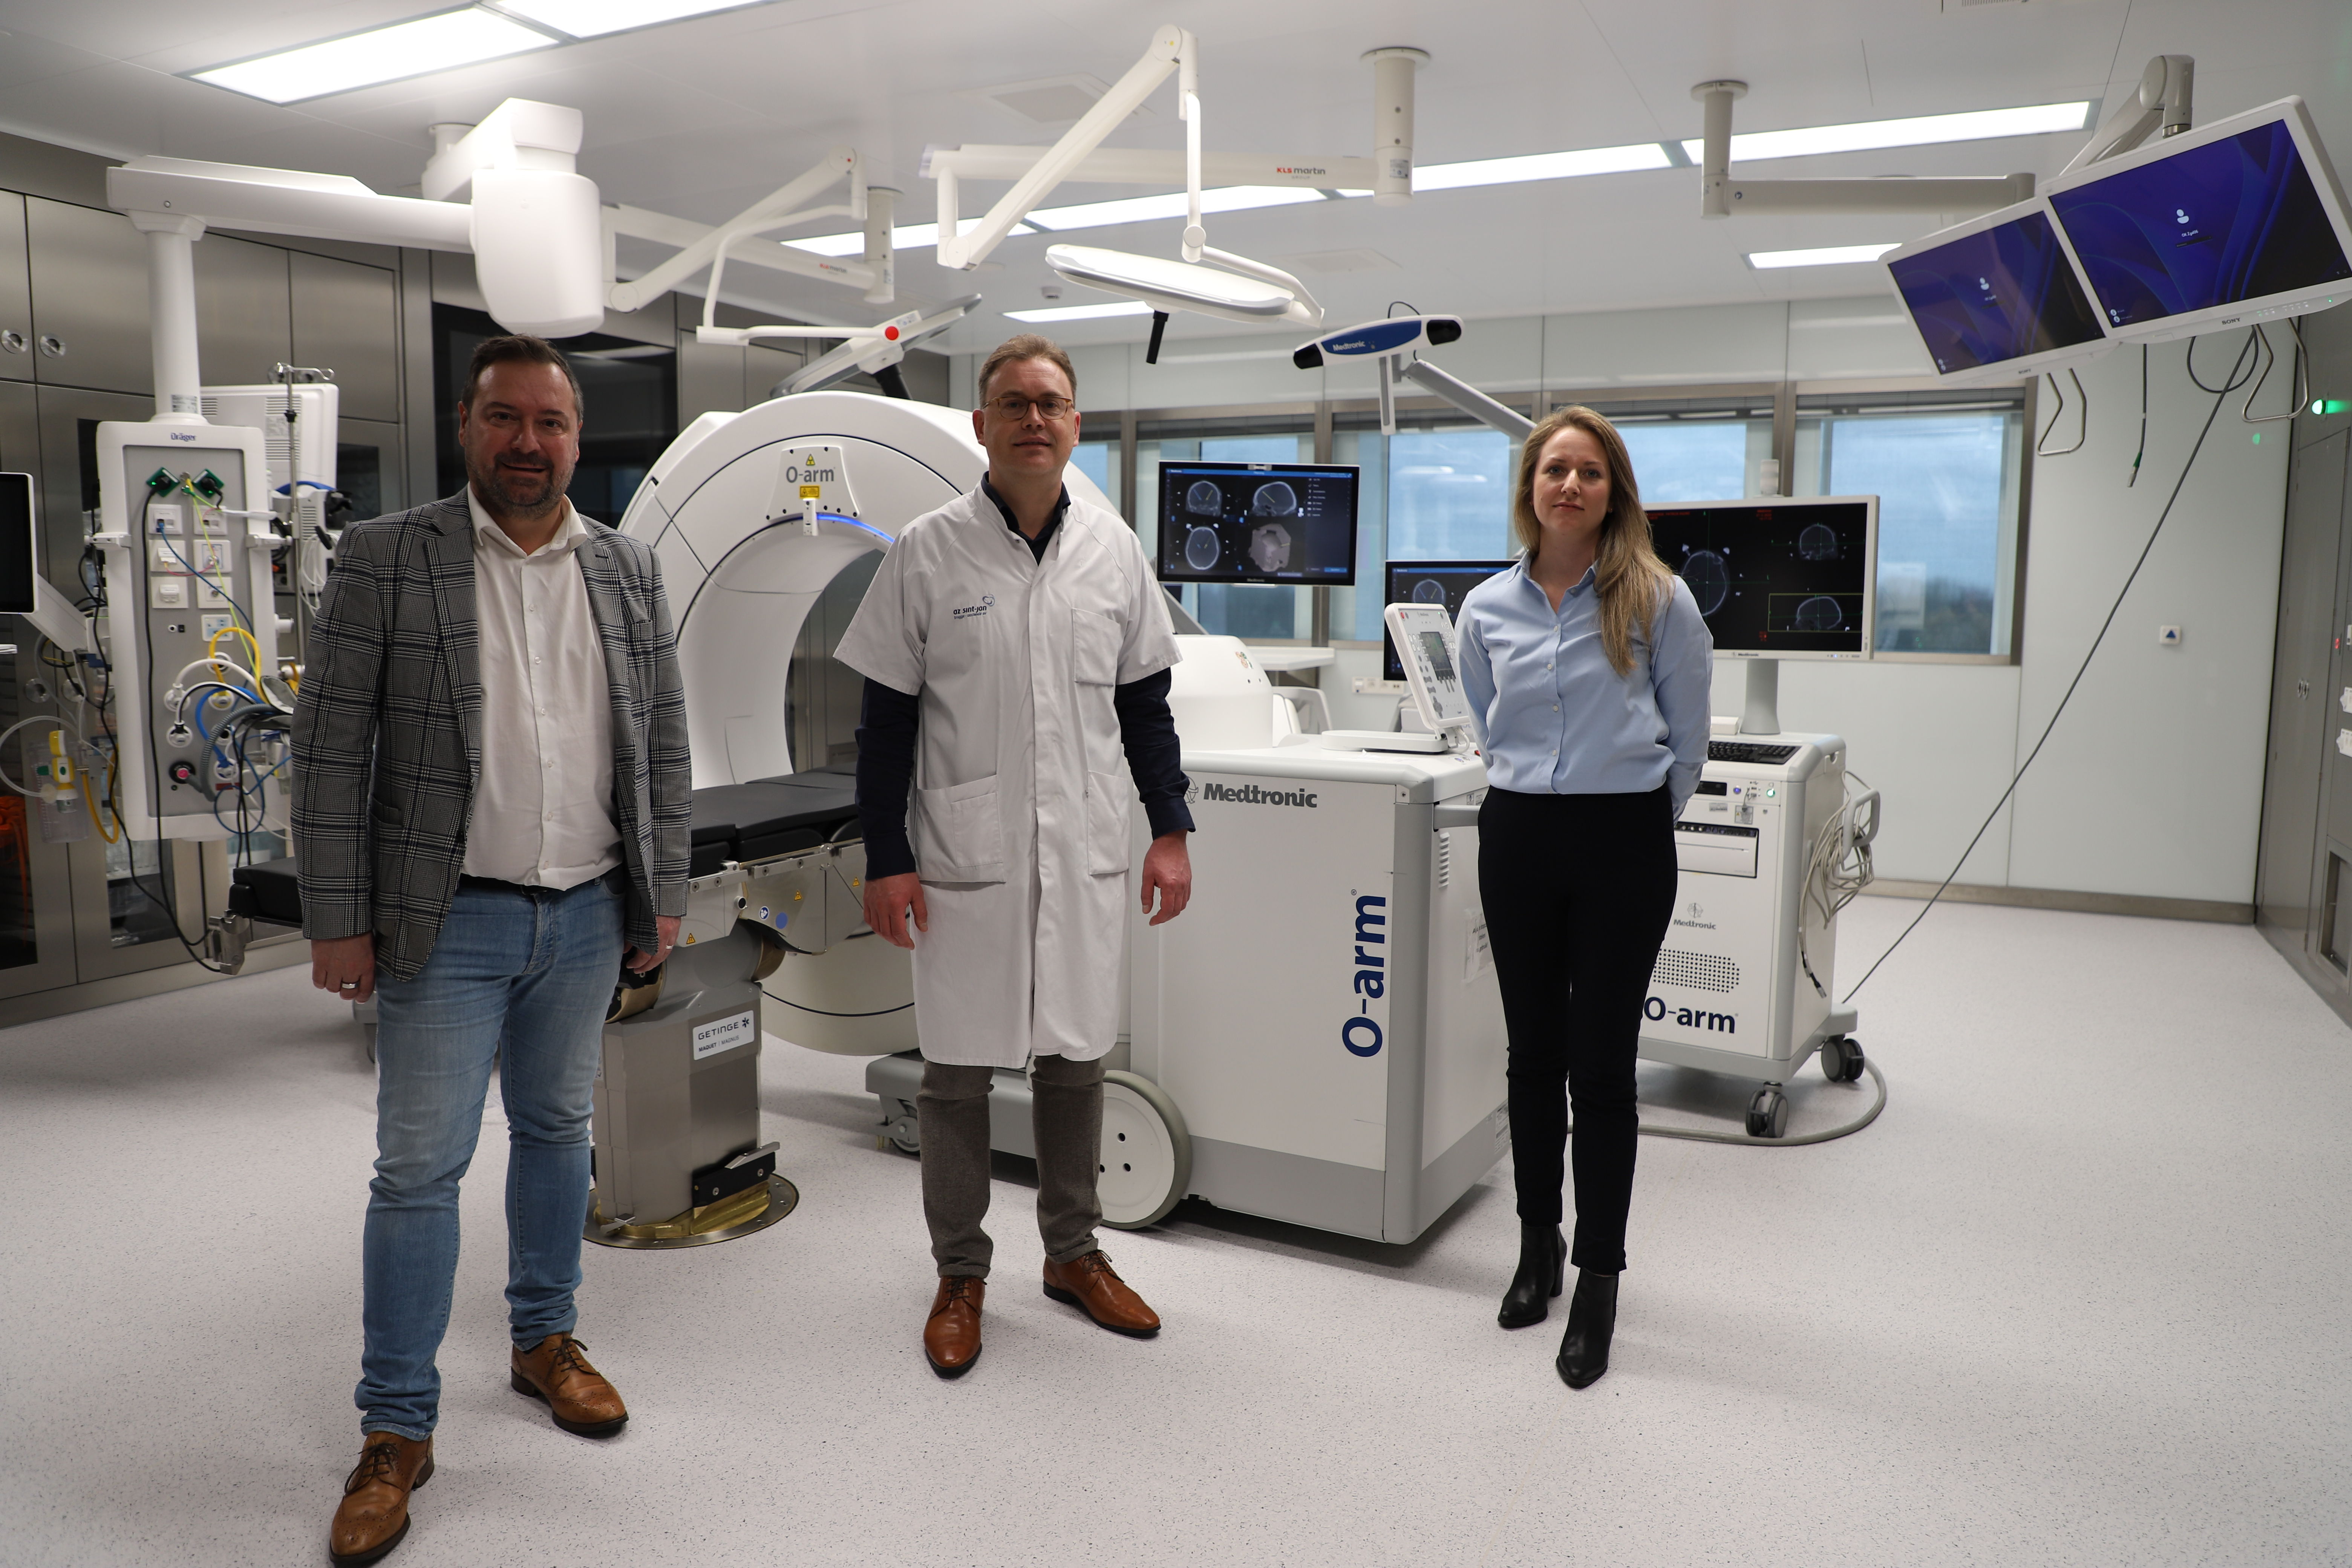 Ziekenhuisvoorzitter Pablo Annys bracht een bezoek aan de twee gloednieuwe neurochirurgieoperatiezalen, die beide optimaal gebruik kunnen maken van de intra-operatieve CT-scan (O-arm) bij craneale en spinale ingrepen.